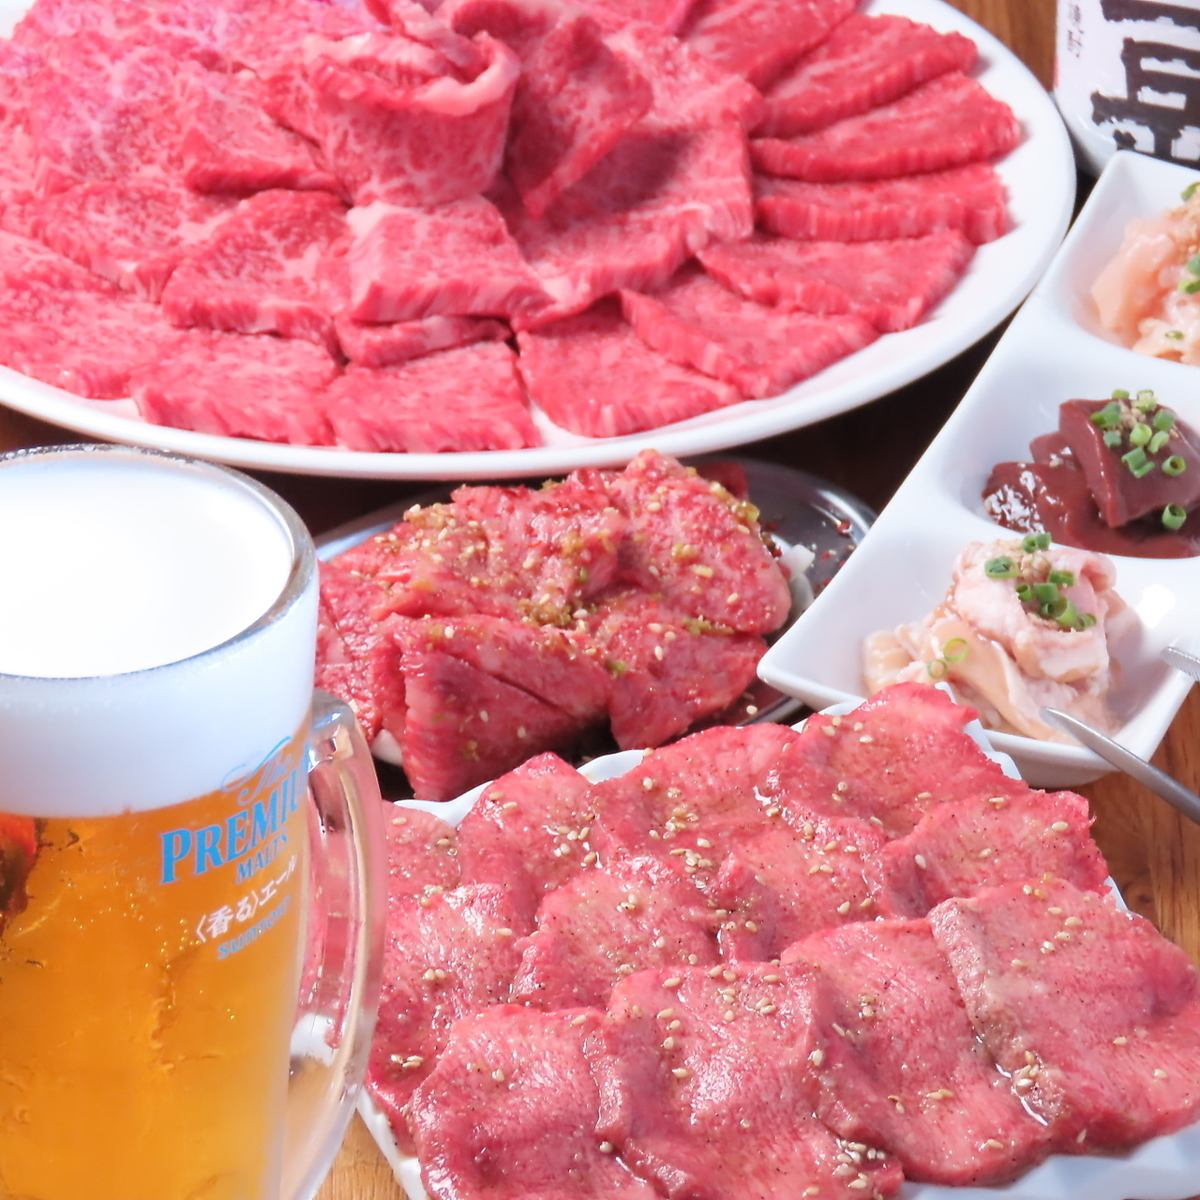 從川尻站步行約11分鐘 可以品嚐到高級熟成肉的烤肉店在川尻站開業了！